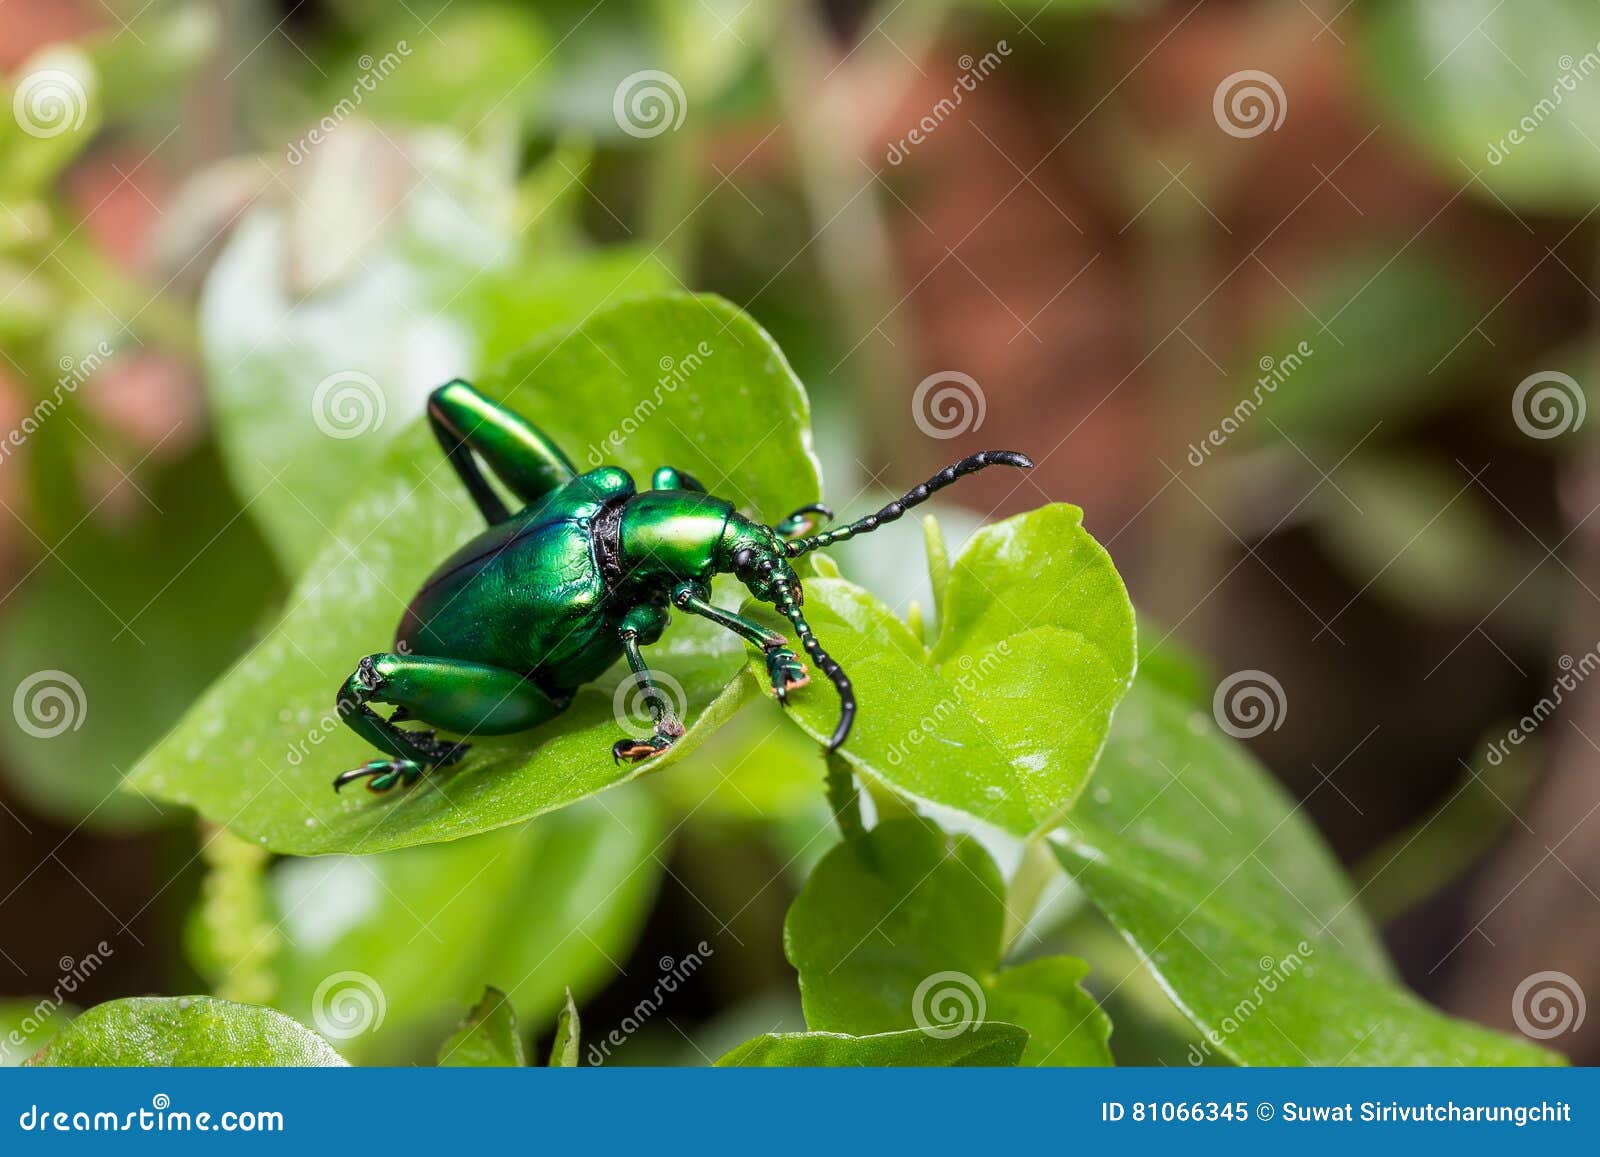 frog legged leaf beetle sagra buqueti